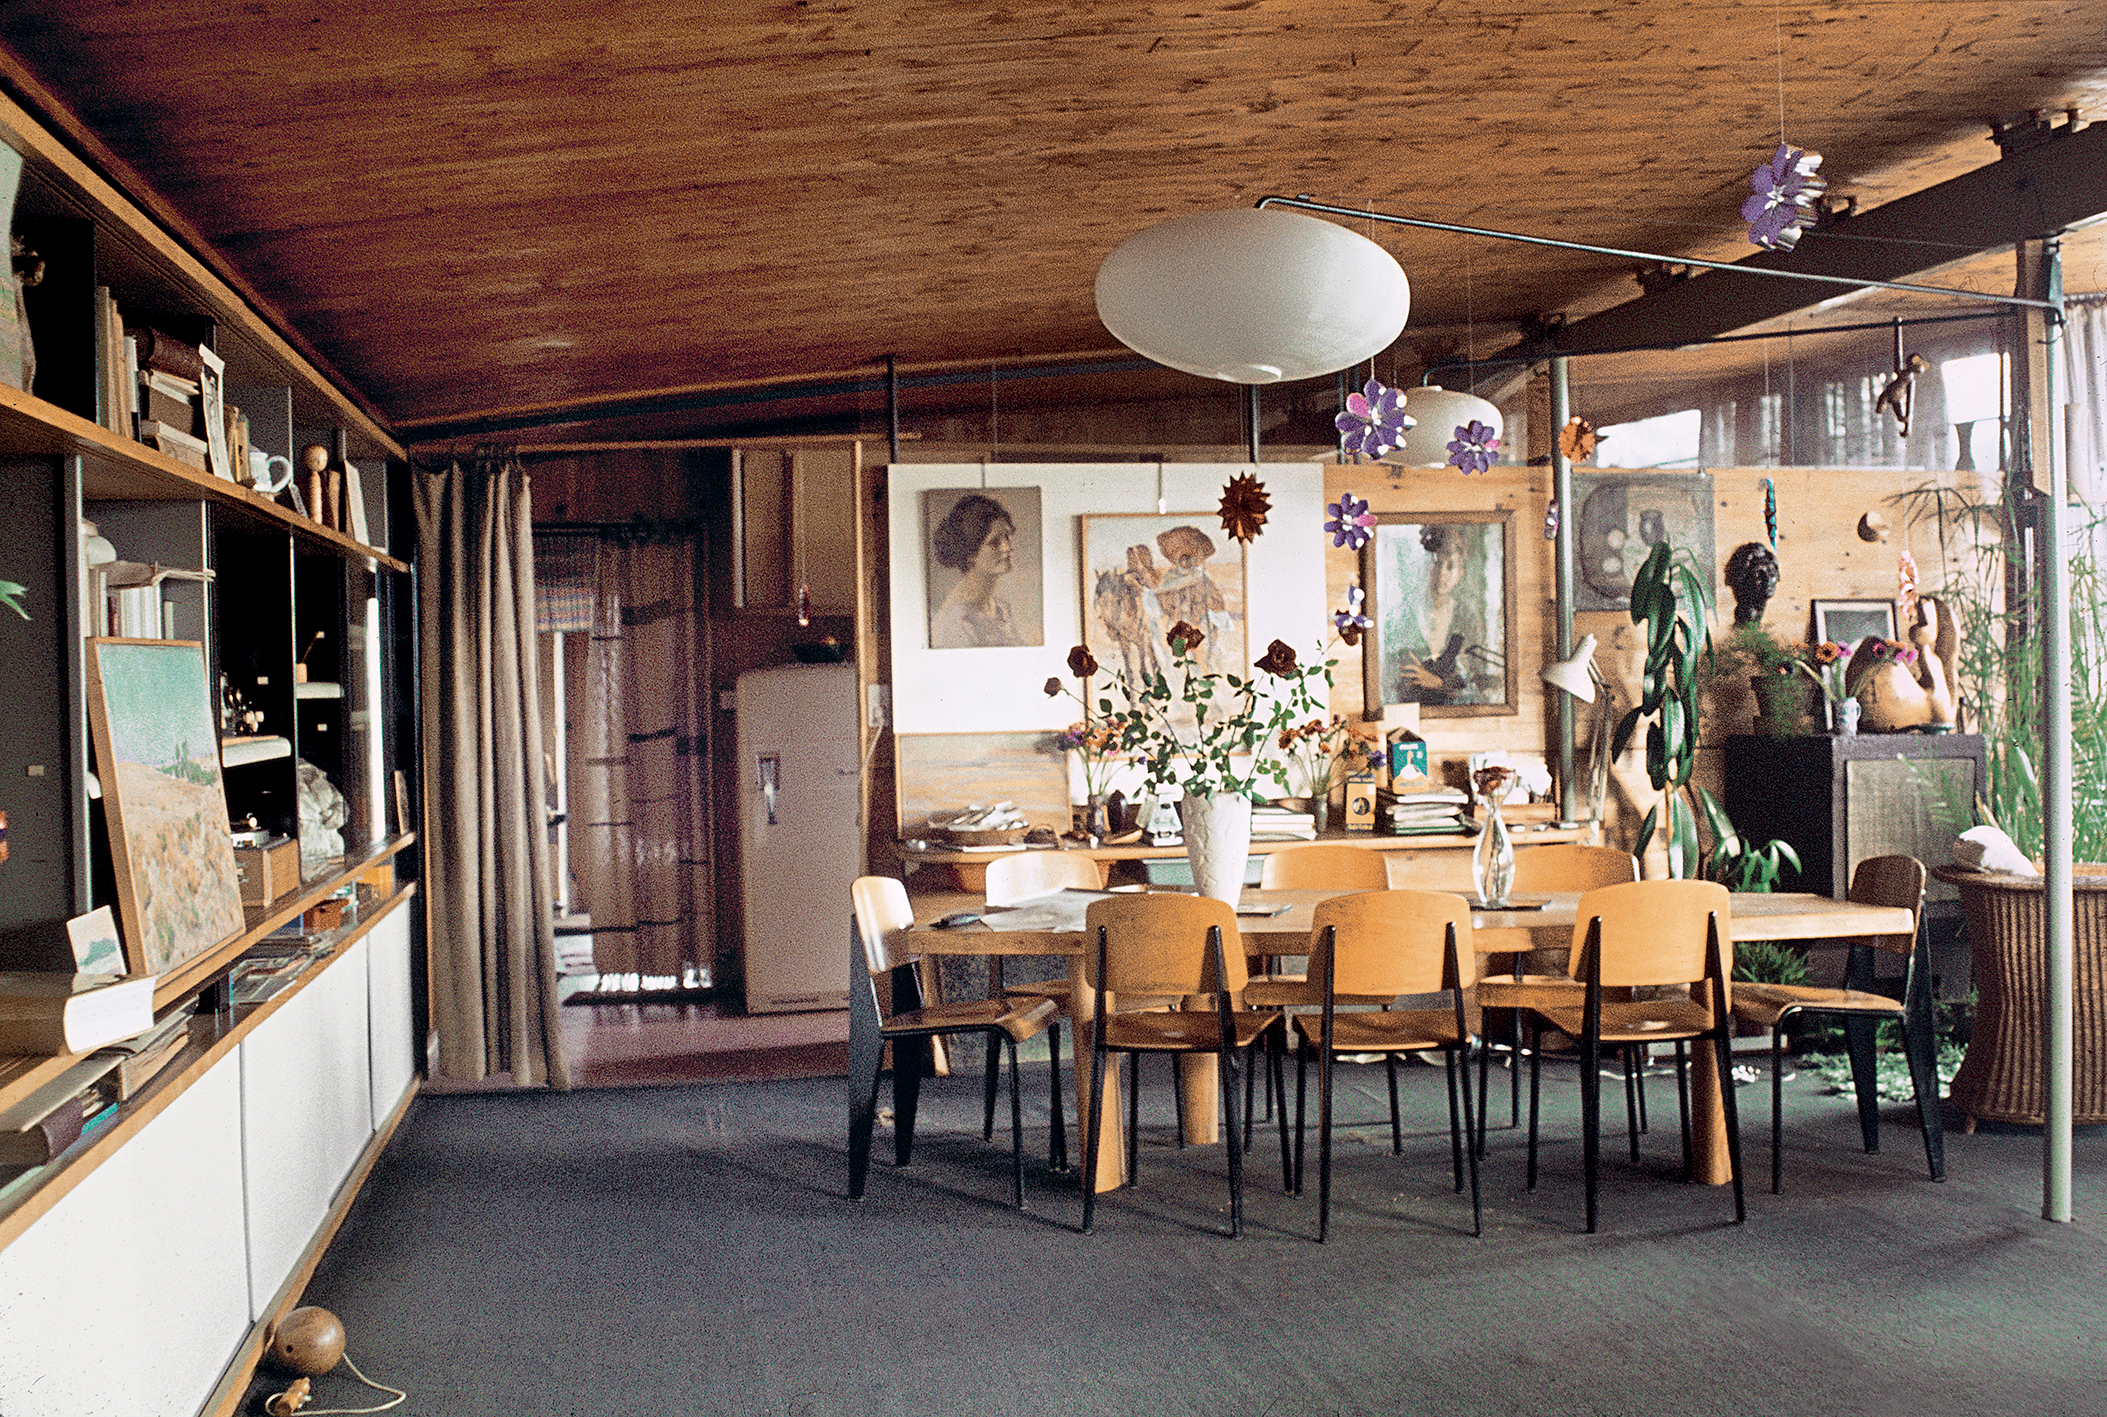 La maison Jean Prouvé. Le coin-repas aménagé avec une table spécialement conçue par Pierre Jeanneret en 1943, des chaises Métropole n° 305 et une potence d’éclairage pivotante. Le Haut-du-Lièvre, Nancy, c. 1955.